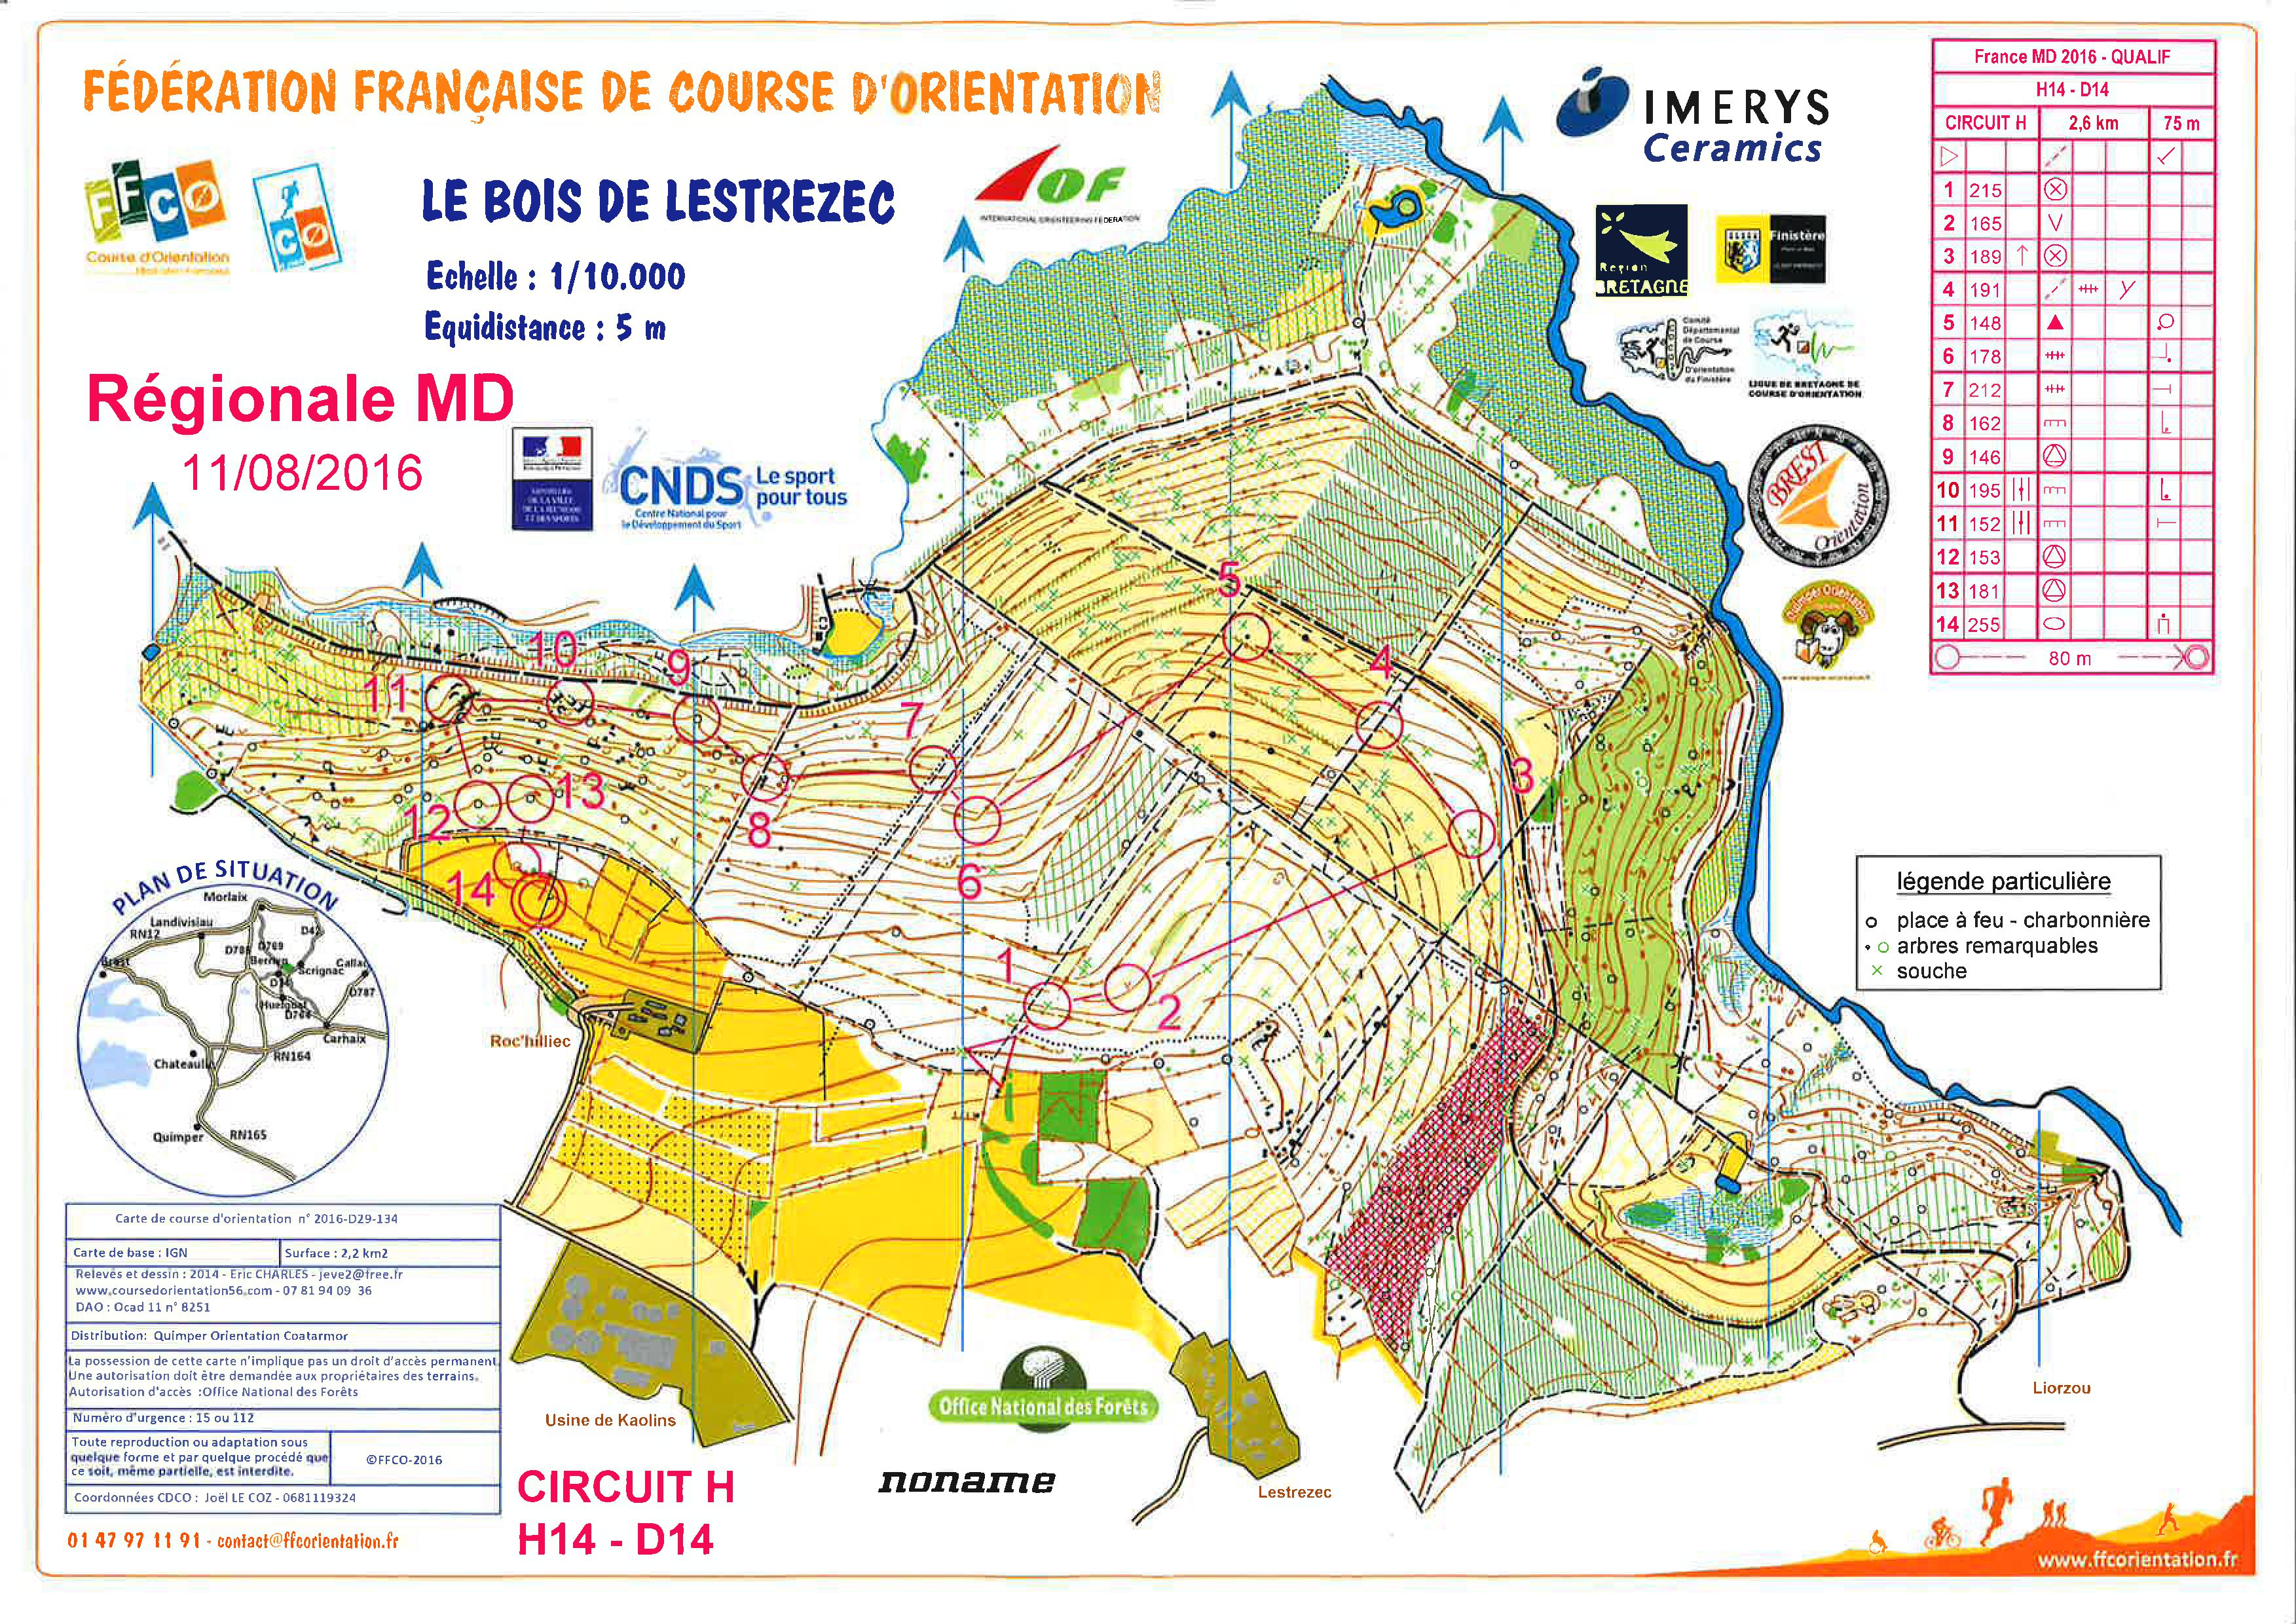 Qualification Championnat de France de Moyenne Distance (11/08/2016)